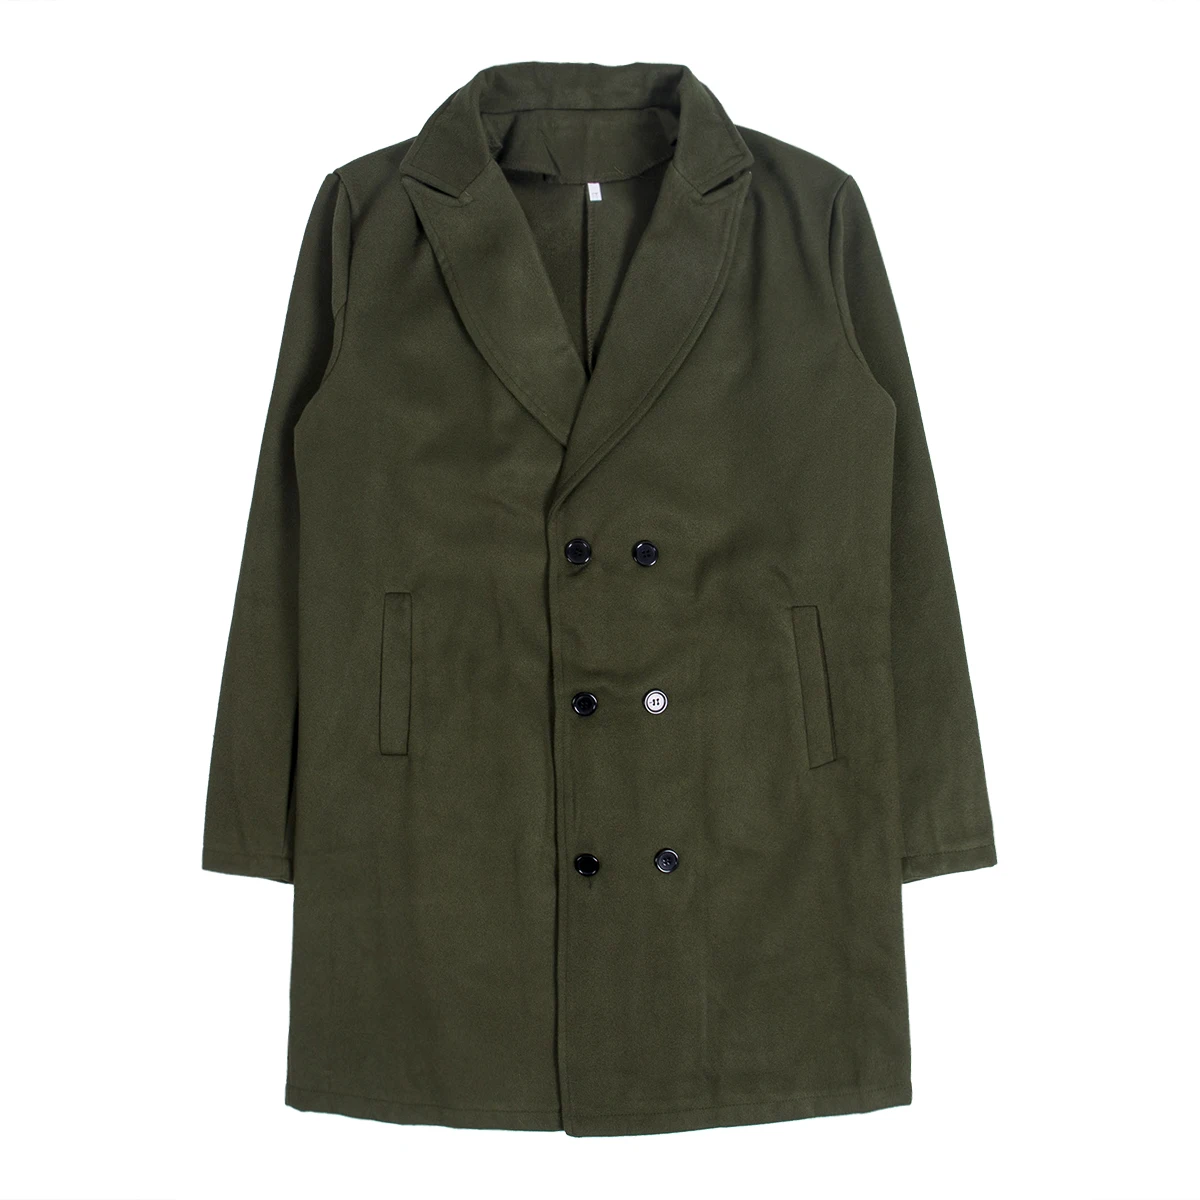 Теплое осенне-зимнее красивое британское мужское шерстяное пальто Зимняя верхняя одежда с отворотом теплое розовое черное серое армейское зеленое бежевое длинное пальто - Цвет: Армейский зеленый